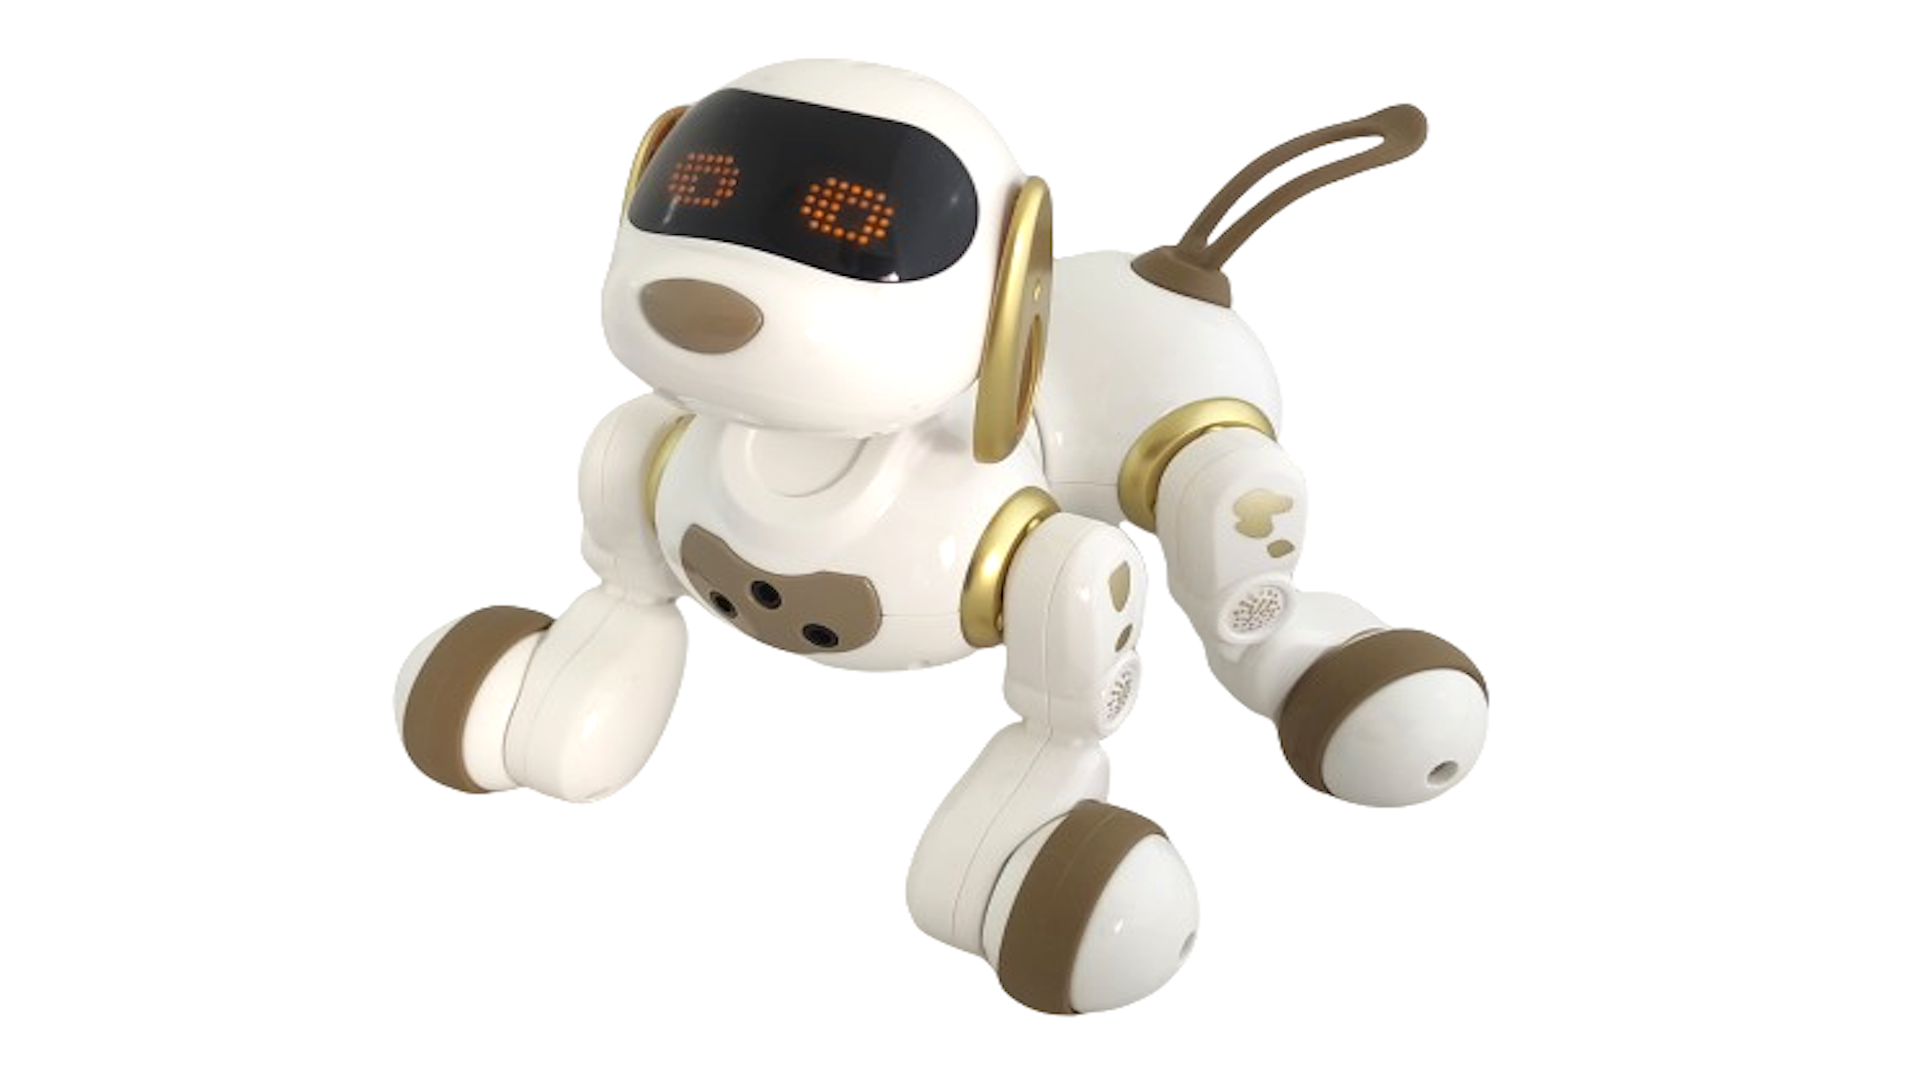 Интерактивная радиоуправляемая собака робот Smart Robot Dog Dexterity AMWELL AW-18011-GOLD робот shantou gepai alpha robot feng yuan k1